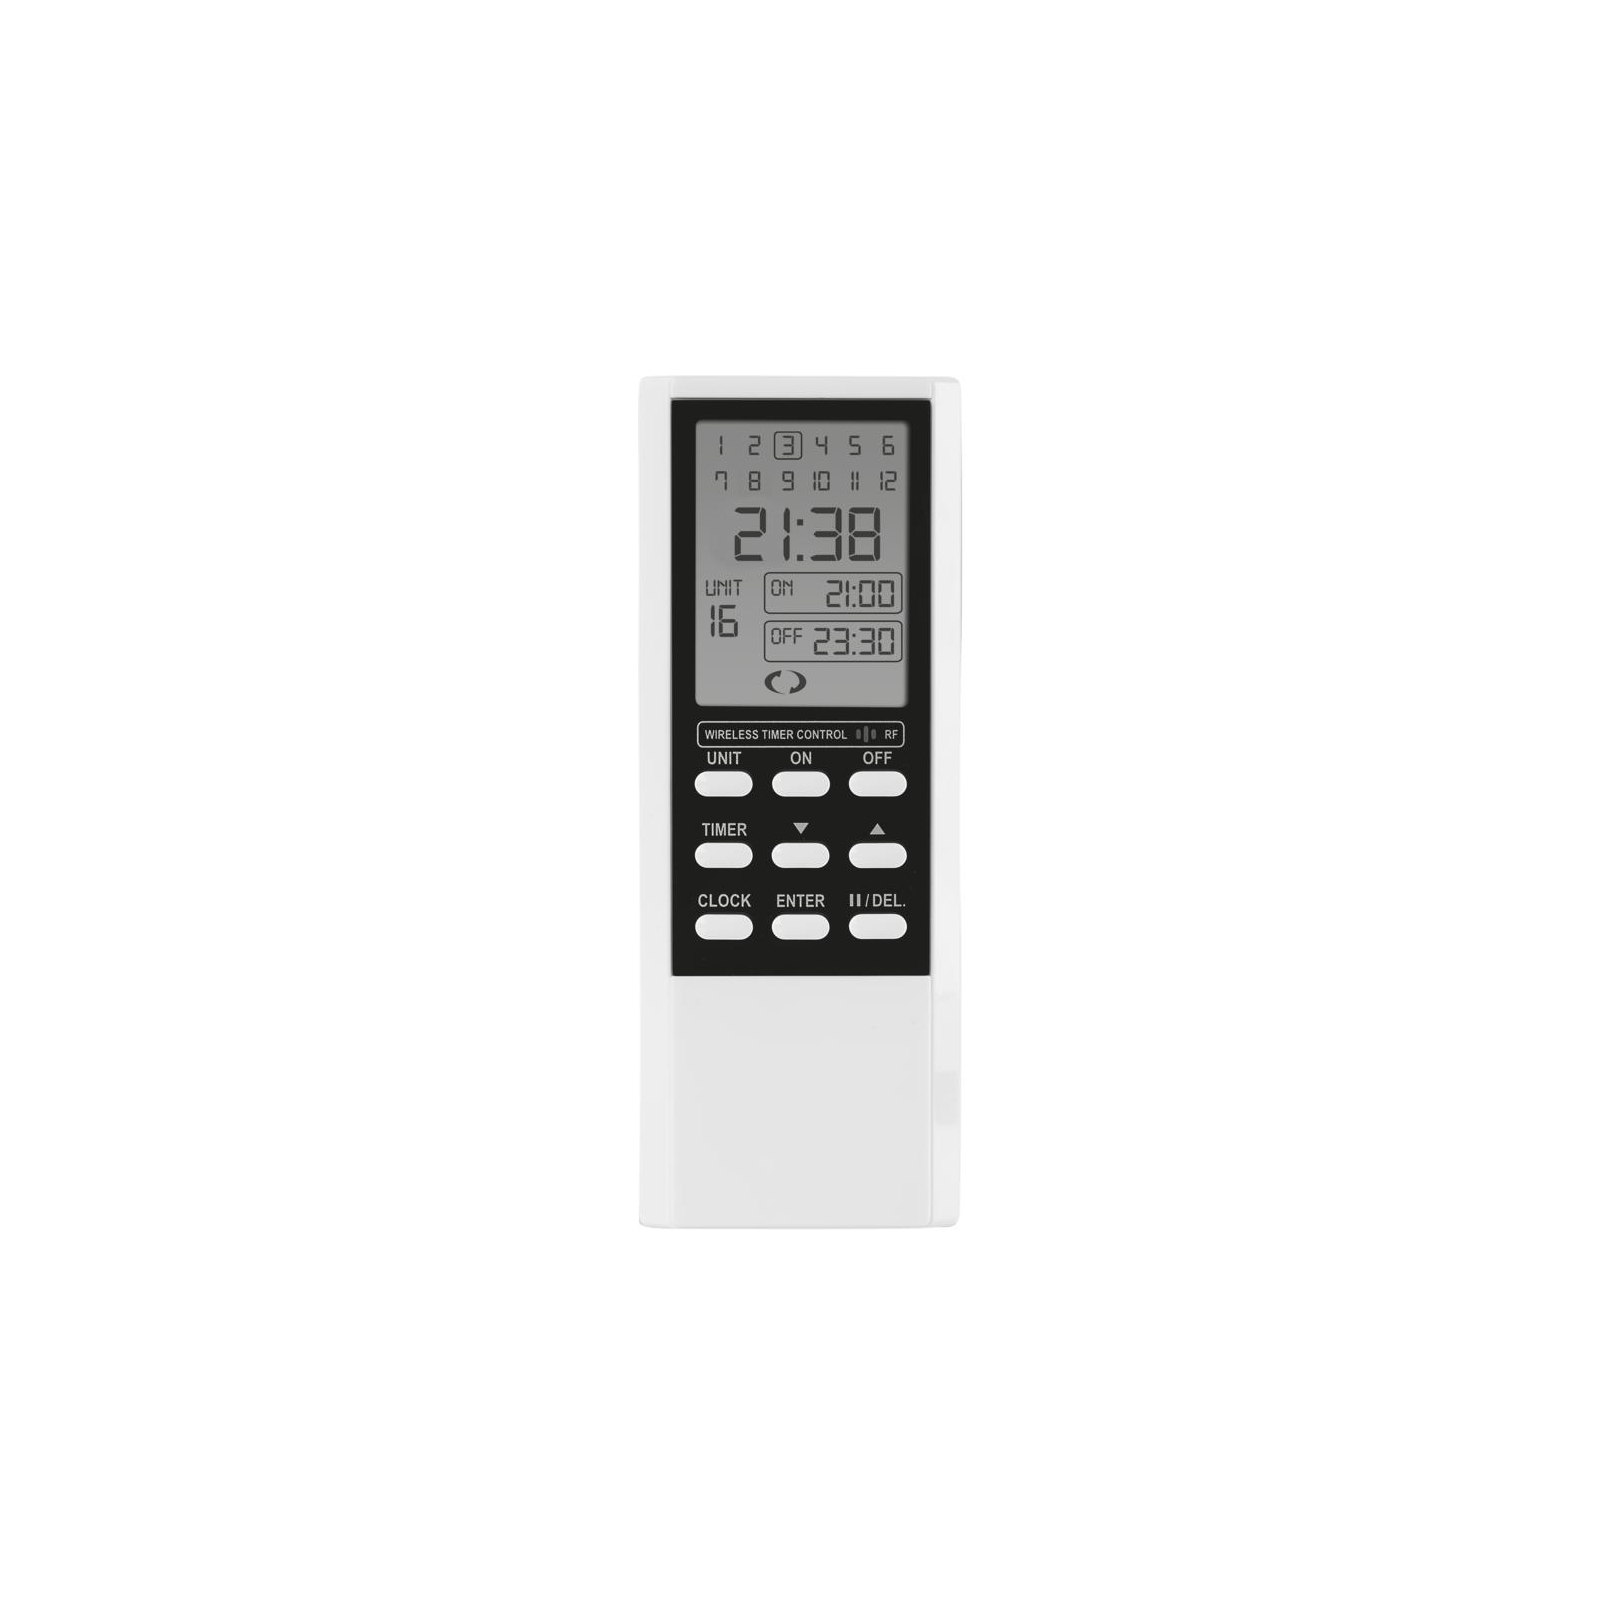 Пульт управления беспроводными выключателями Trust ATMT-502 Remote control with timer (71090)